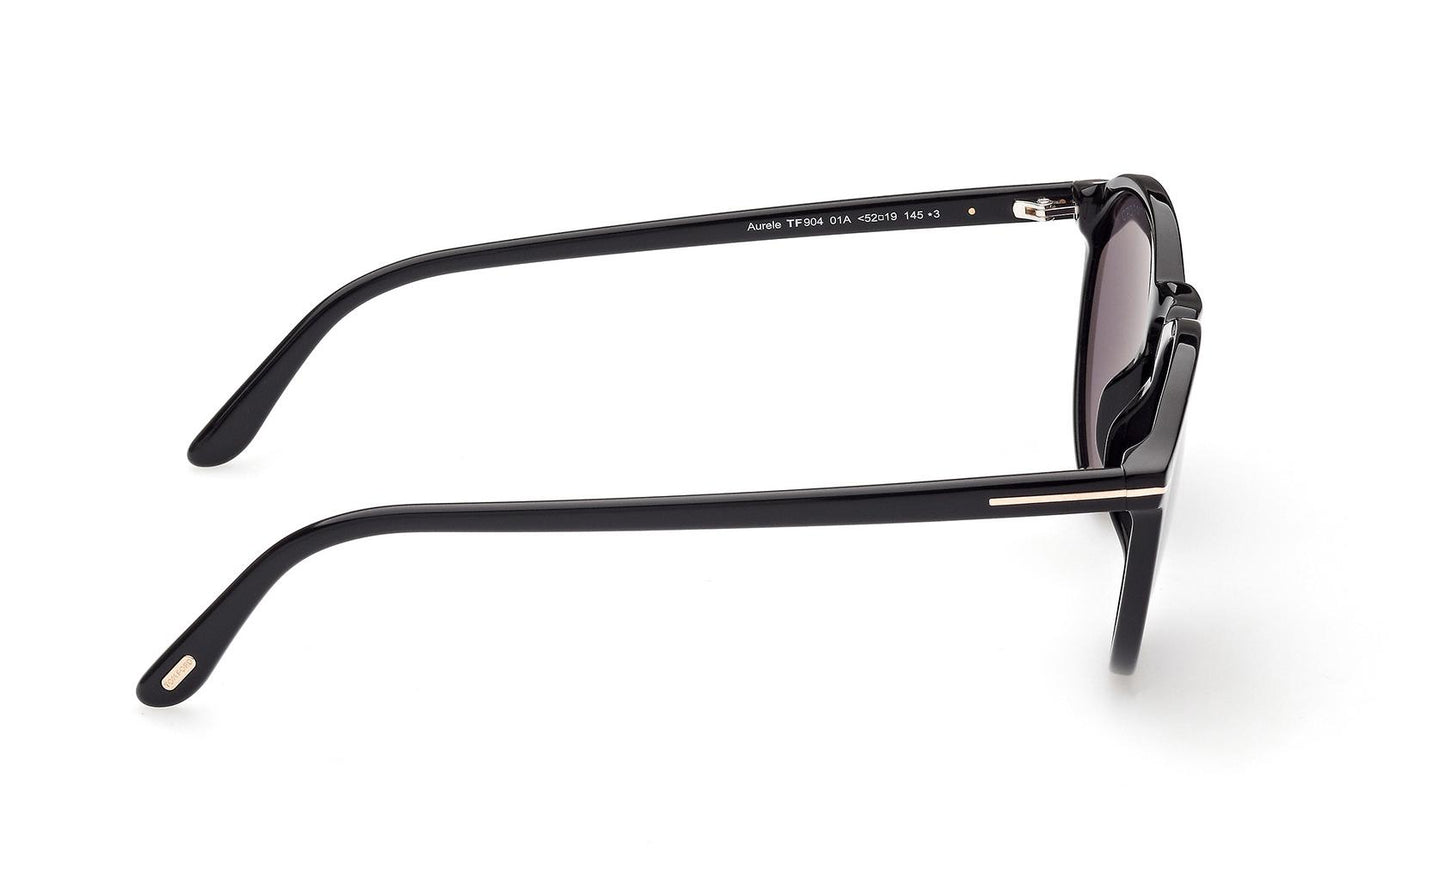 Tom Ford Aurele Sunglasses FT0904 01A